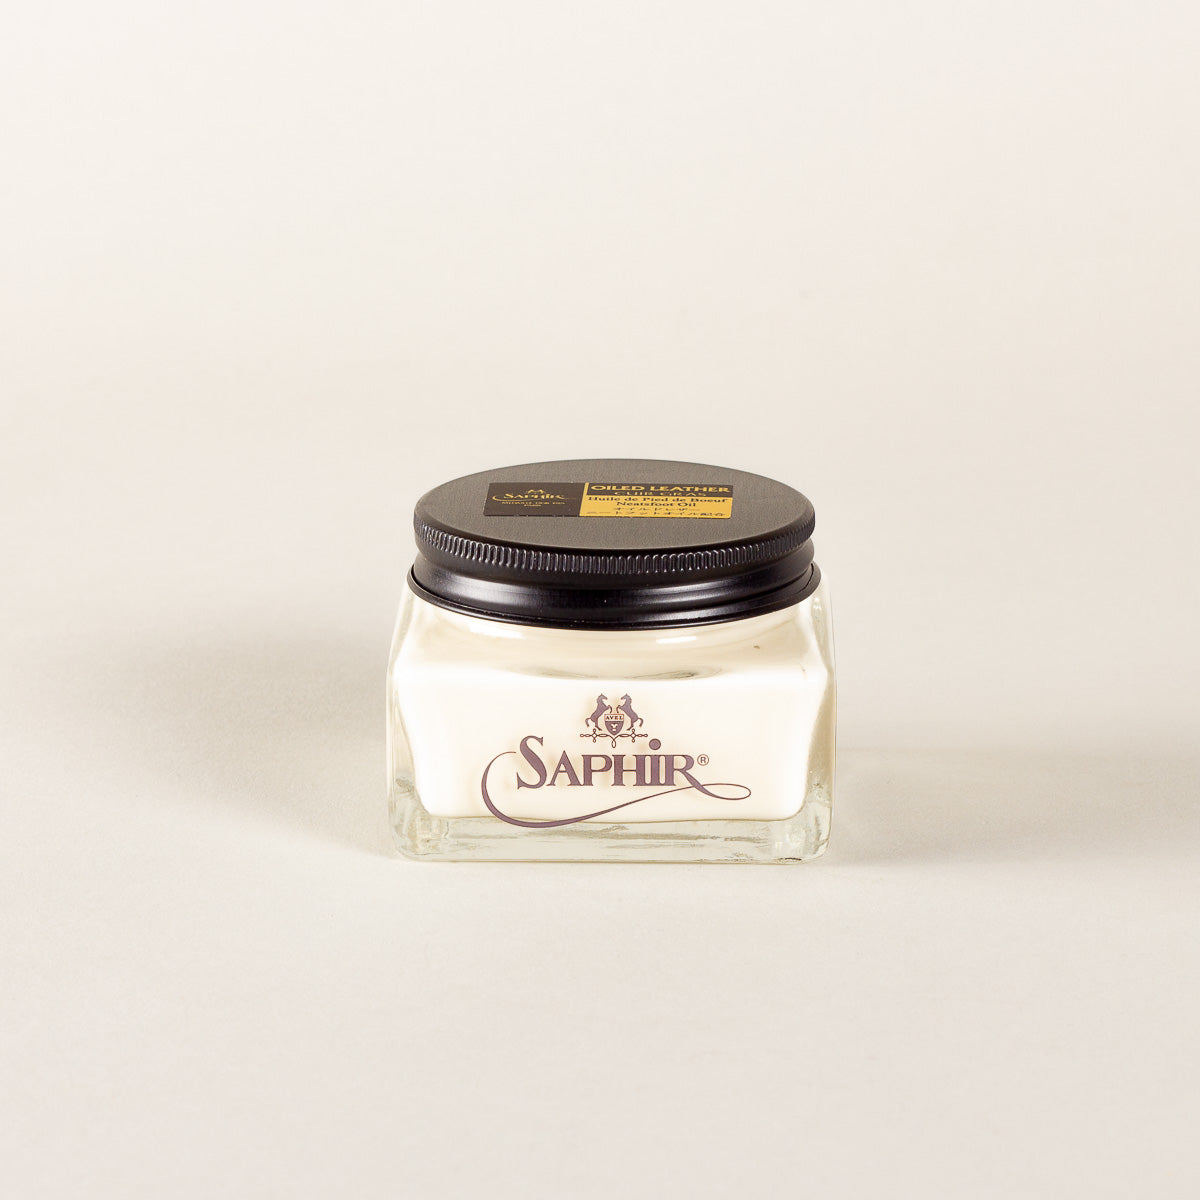 Saphir Médaille d'Or Oiled Leather cream